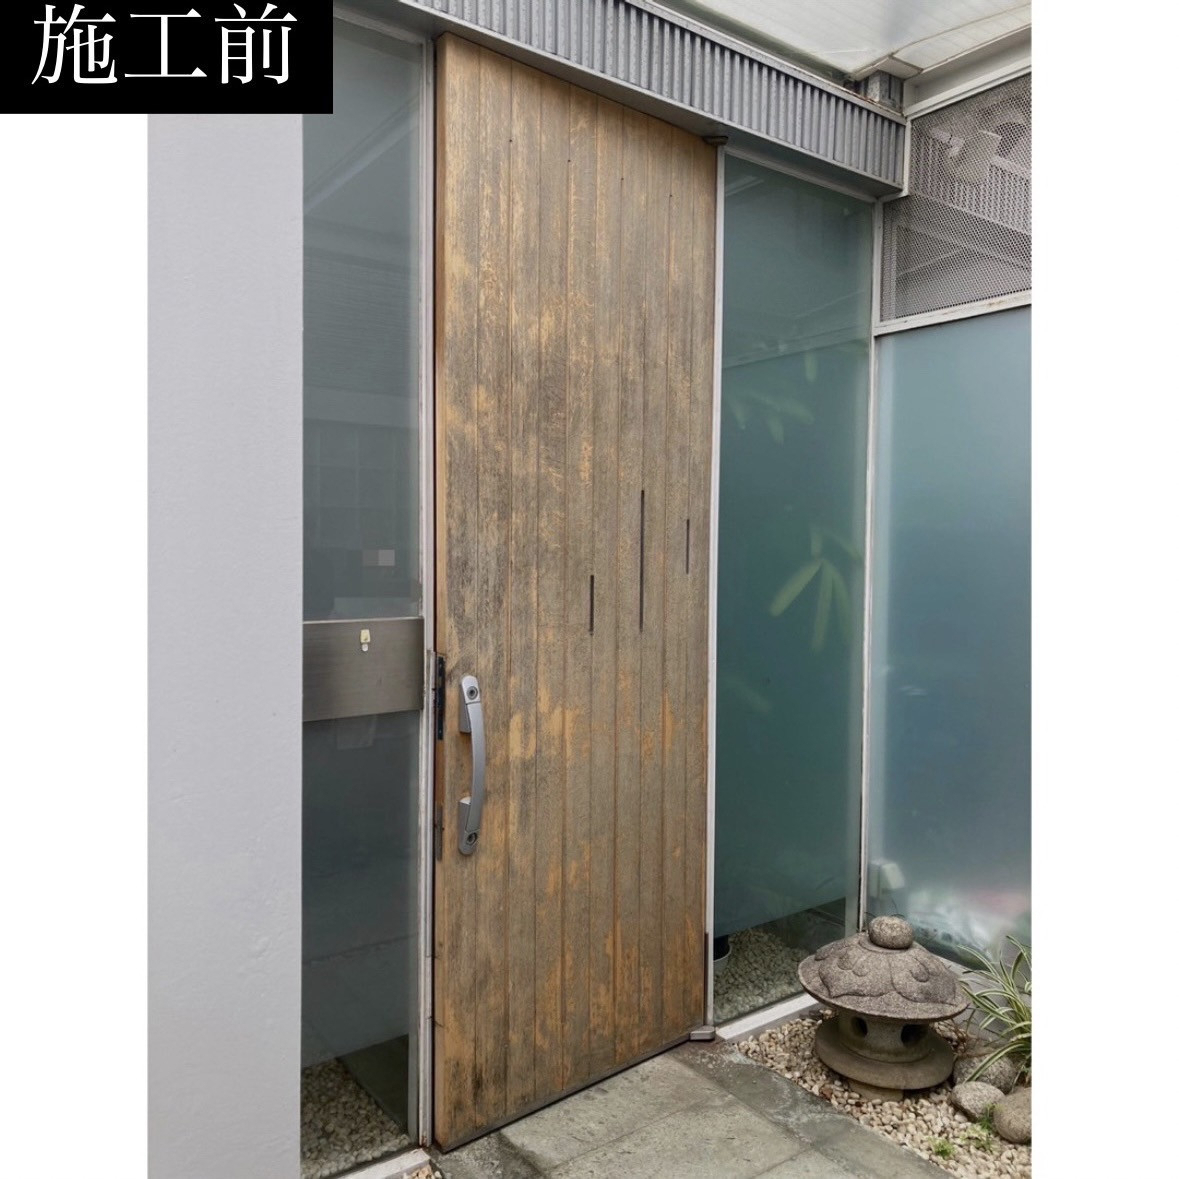 三輪ガラスの刈谷市鉄骨造の玄関ドア。木製玄関ドアが建付けが悪く開閉しずらい。の施工前の写真1